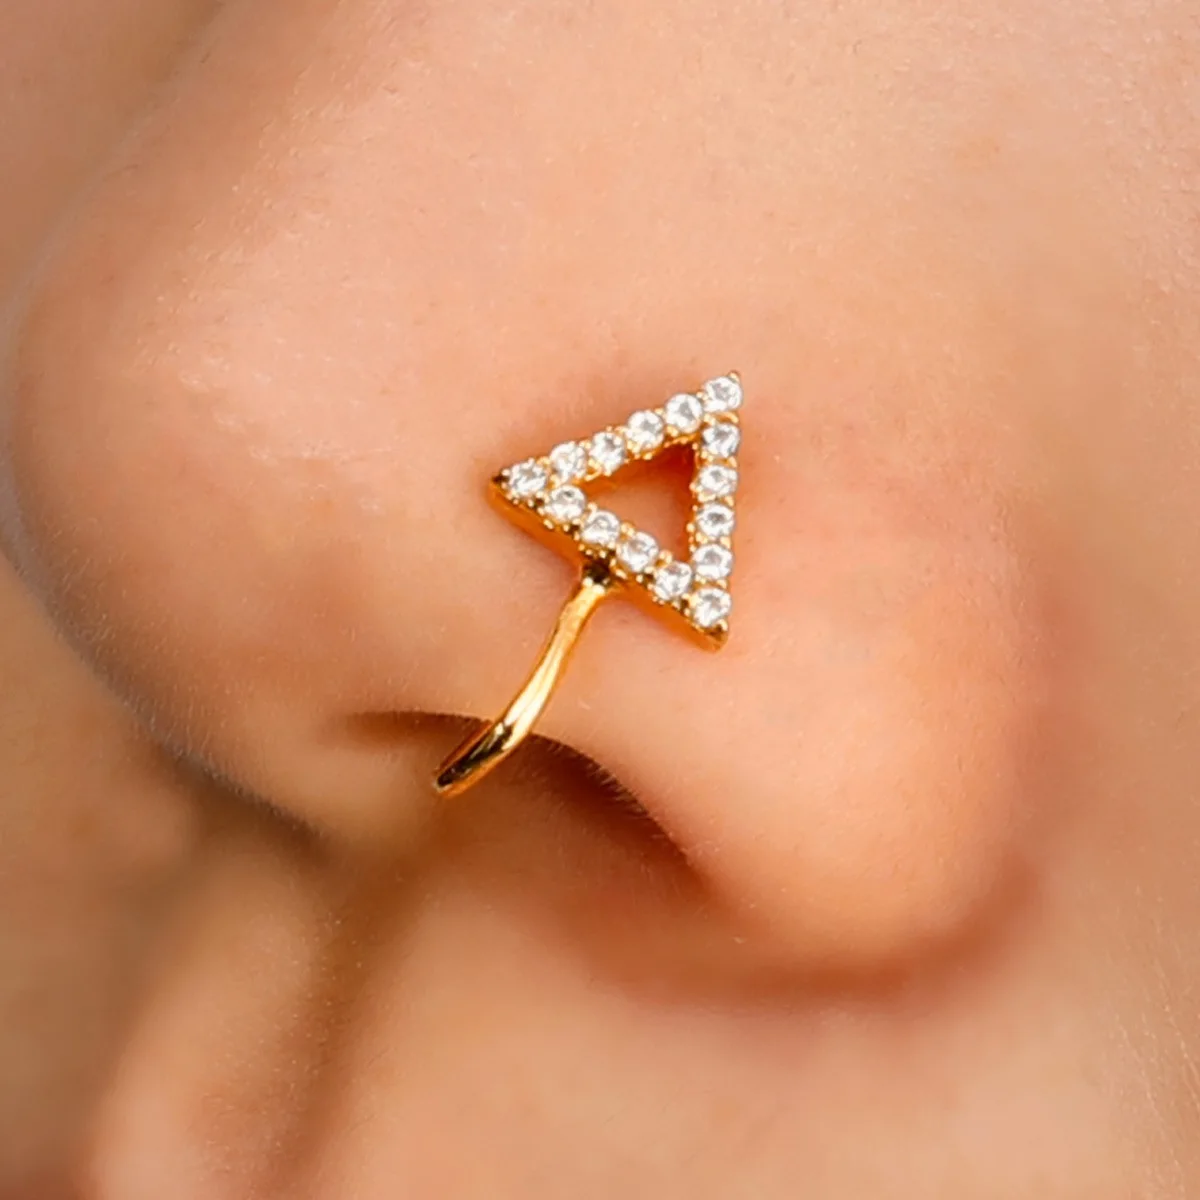 anillo-de-cobre-con-diamantes-de-imitacion-para-la-nariz-para-mujer-aro-geometrico-triangular-sin-perforacion-clip-para-la-nariz-en-forma-de-u-accesorio-de-joyeria